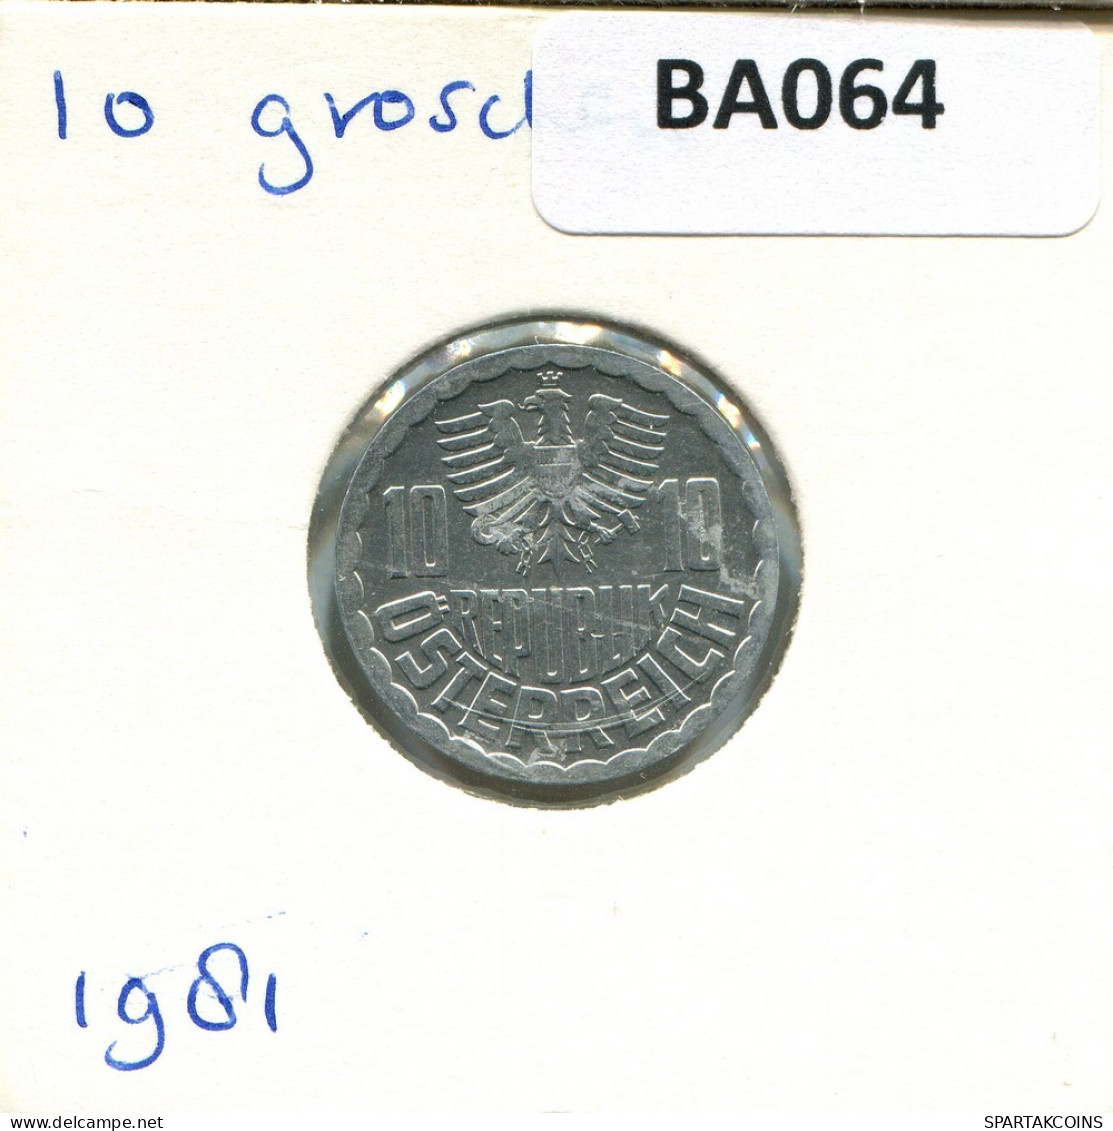 10 GROSCHEN 1981 AUSTRIA Coin #BA064.U.A - Autriche